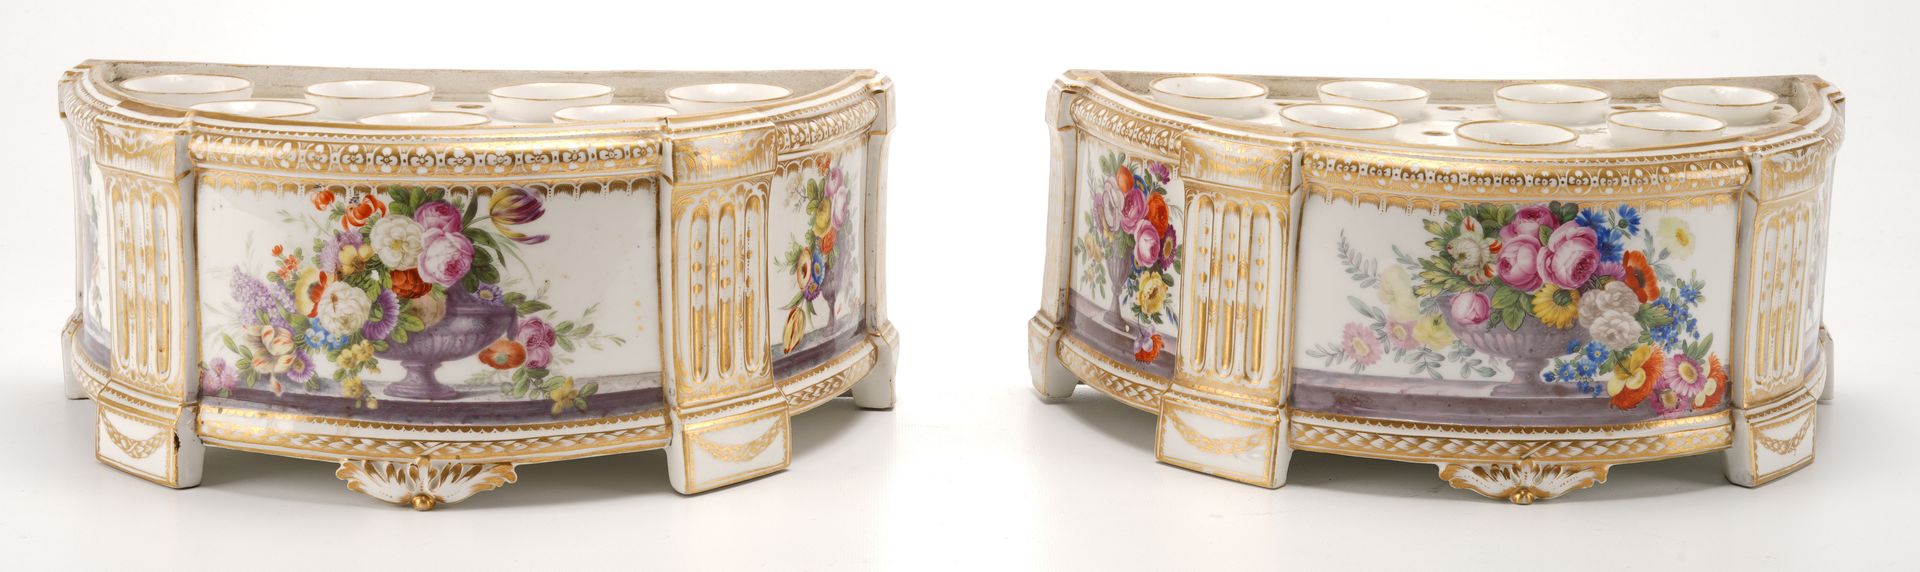 Manufacture de porcelaine de Clignancourt dite de Monsieur 一对特殊的瓷质半月形花盆，装饰有古董花瓶和&hellip;